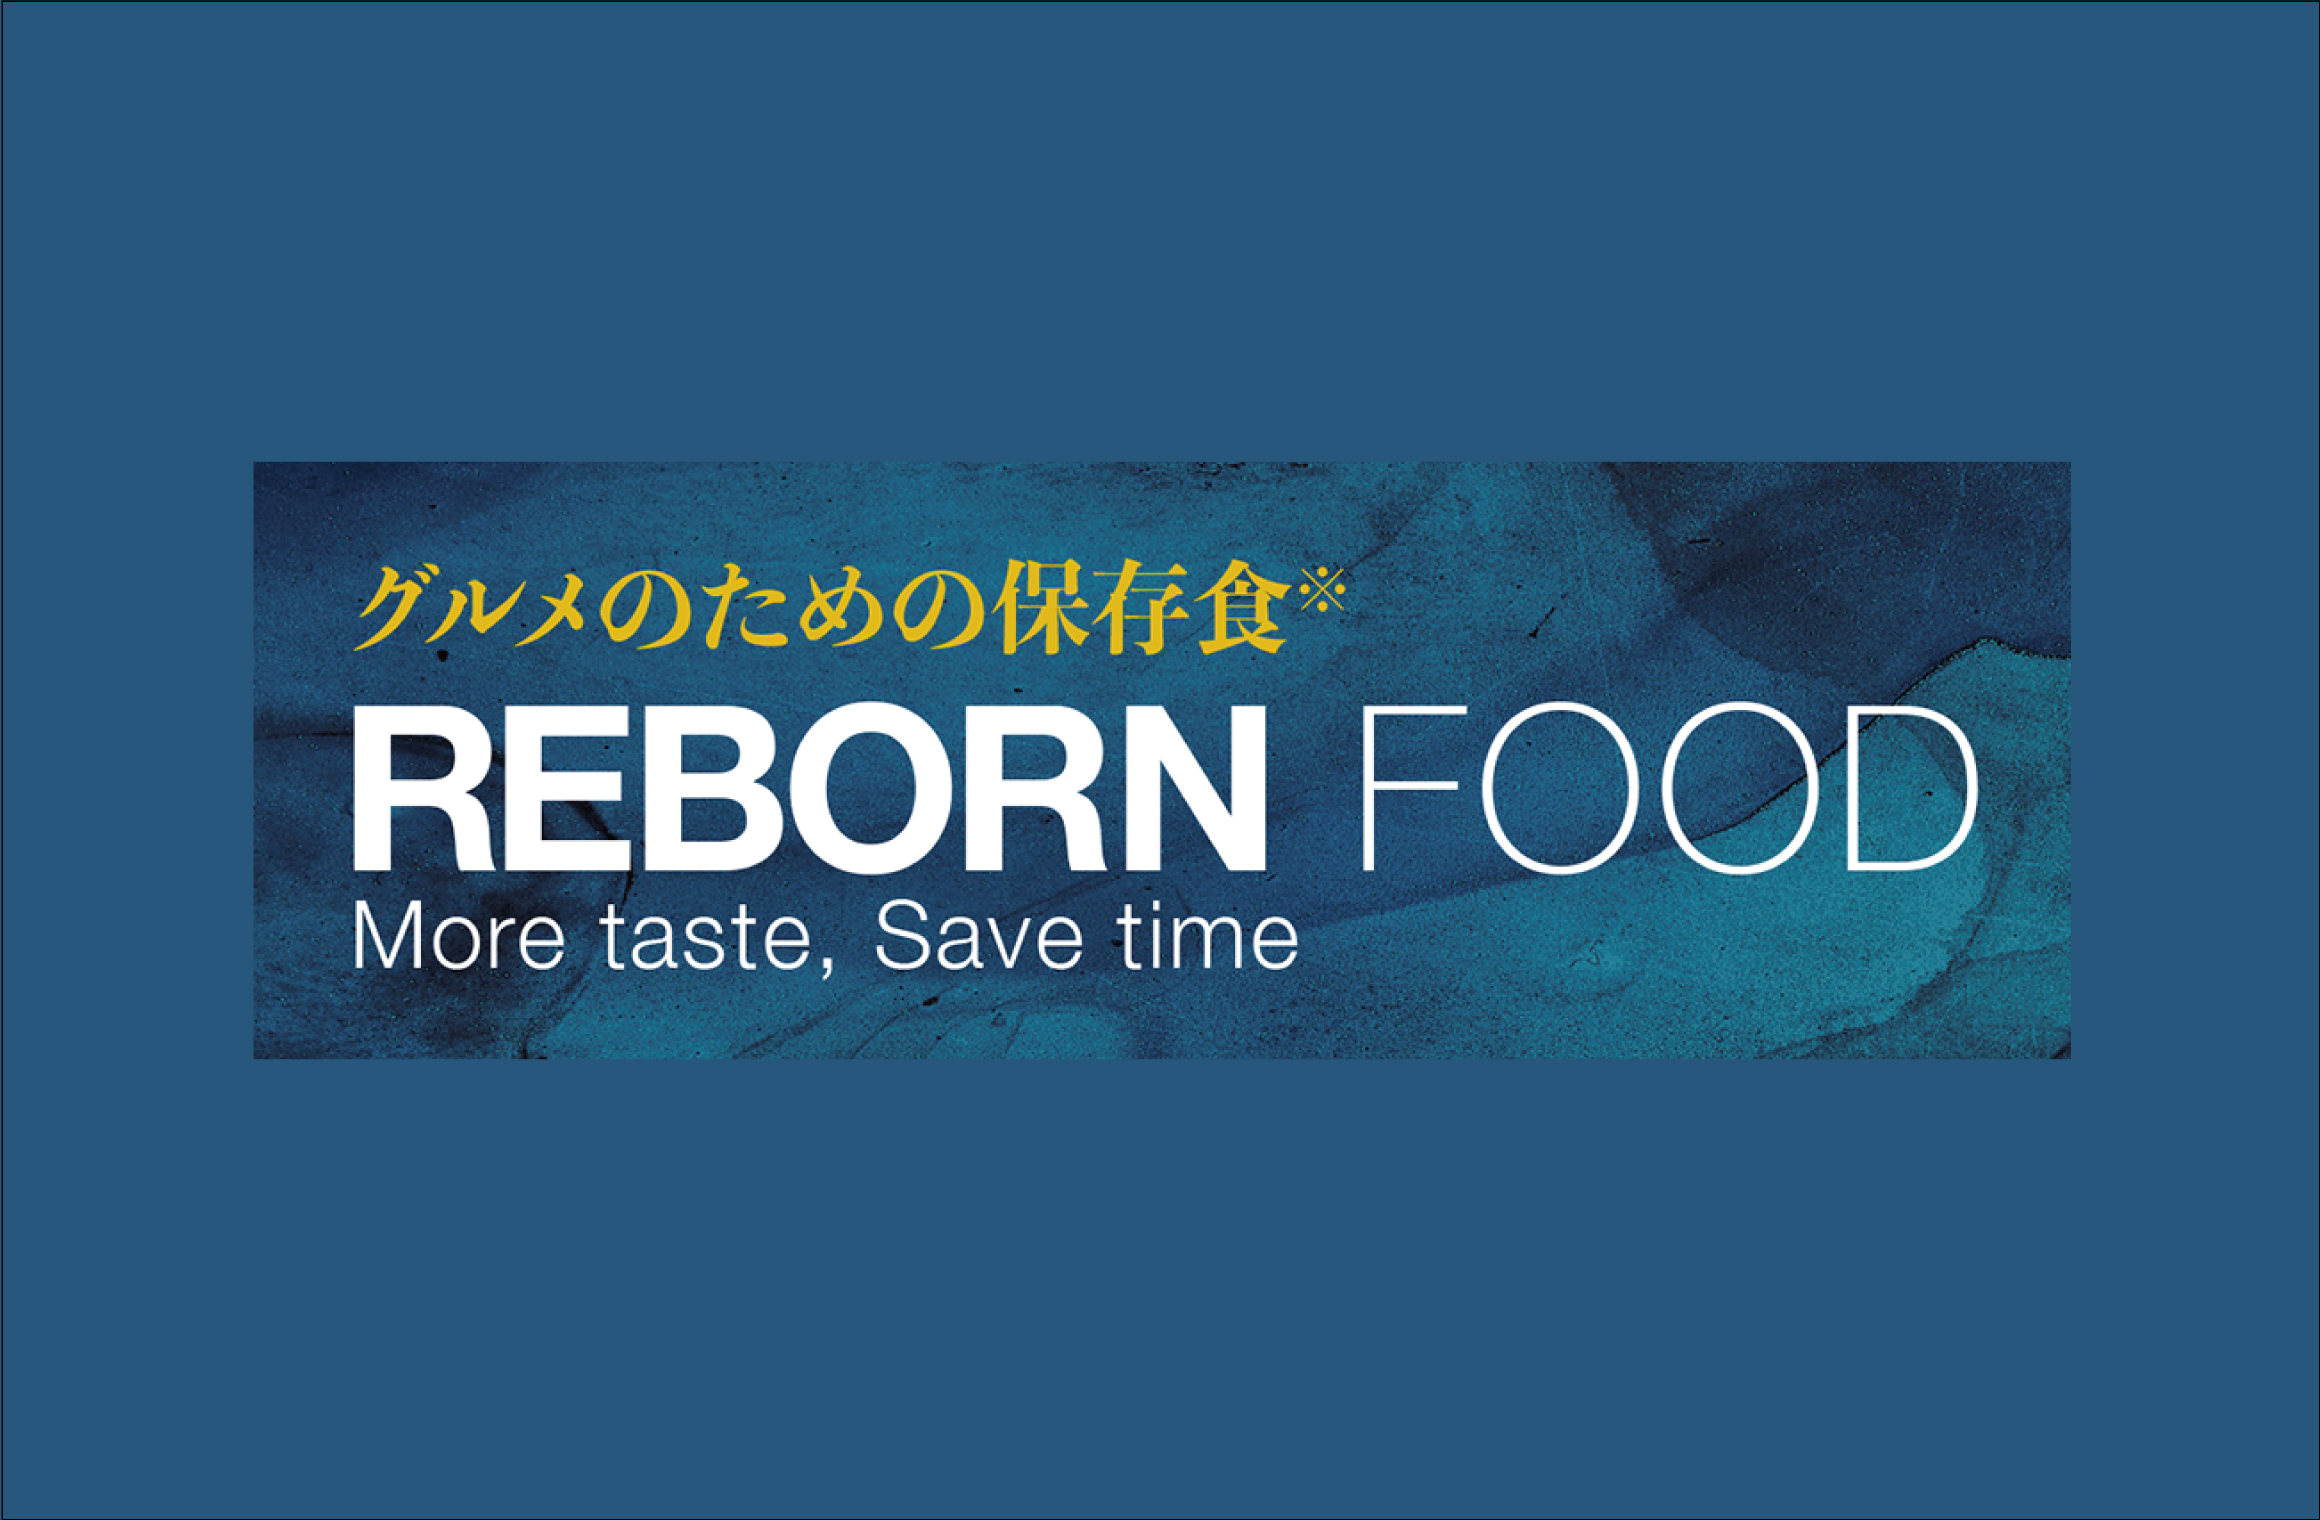 「ぼてぢゅう® グループ」:  お好み焼「元祖 とん玉」の進化系冷凍食品販売のプレスリリースを発表致しました。